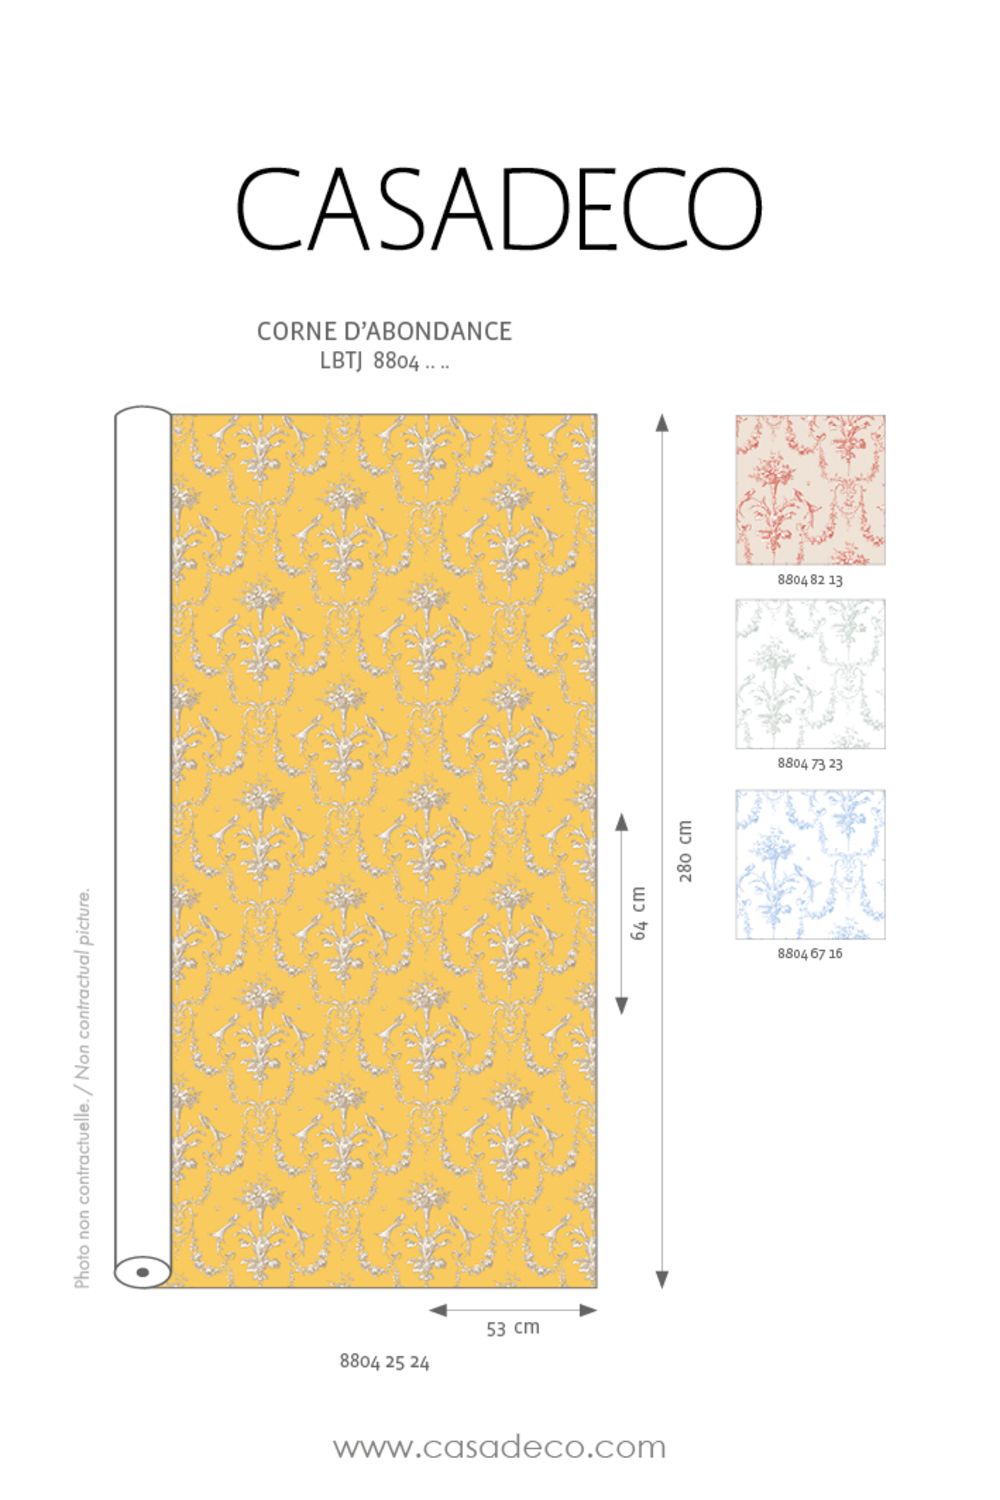 Camengo Tissu Corne D'Abondance Fabric - Jaune Soleil - Les Belles Toiles De Jouy Tissus Collection - 88042524